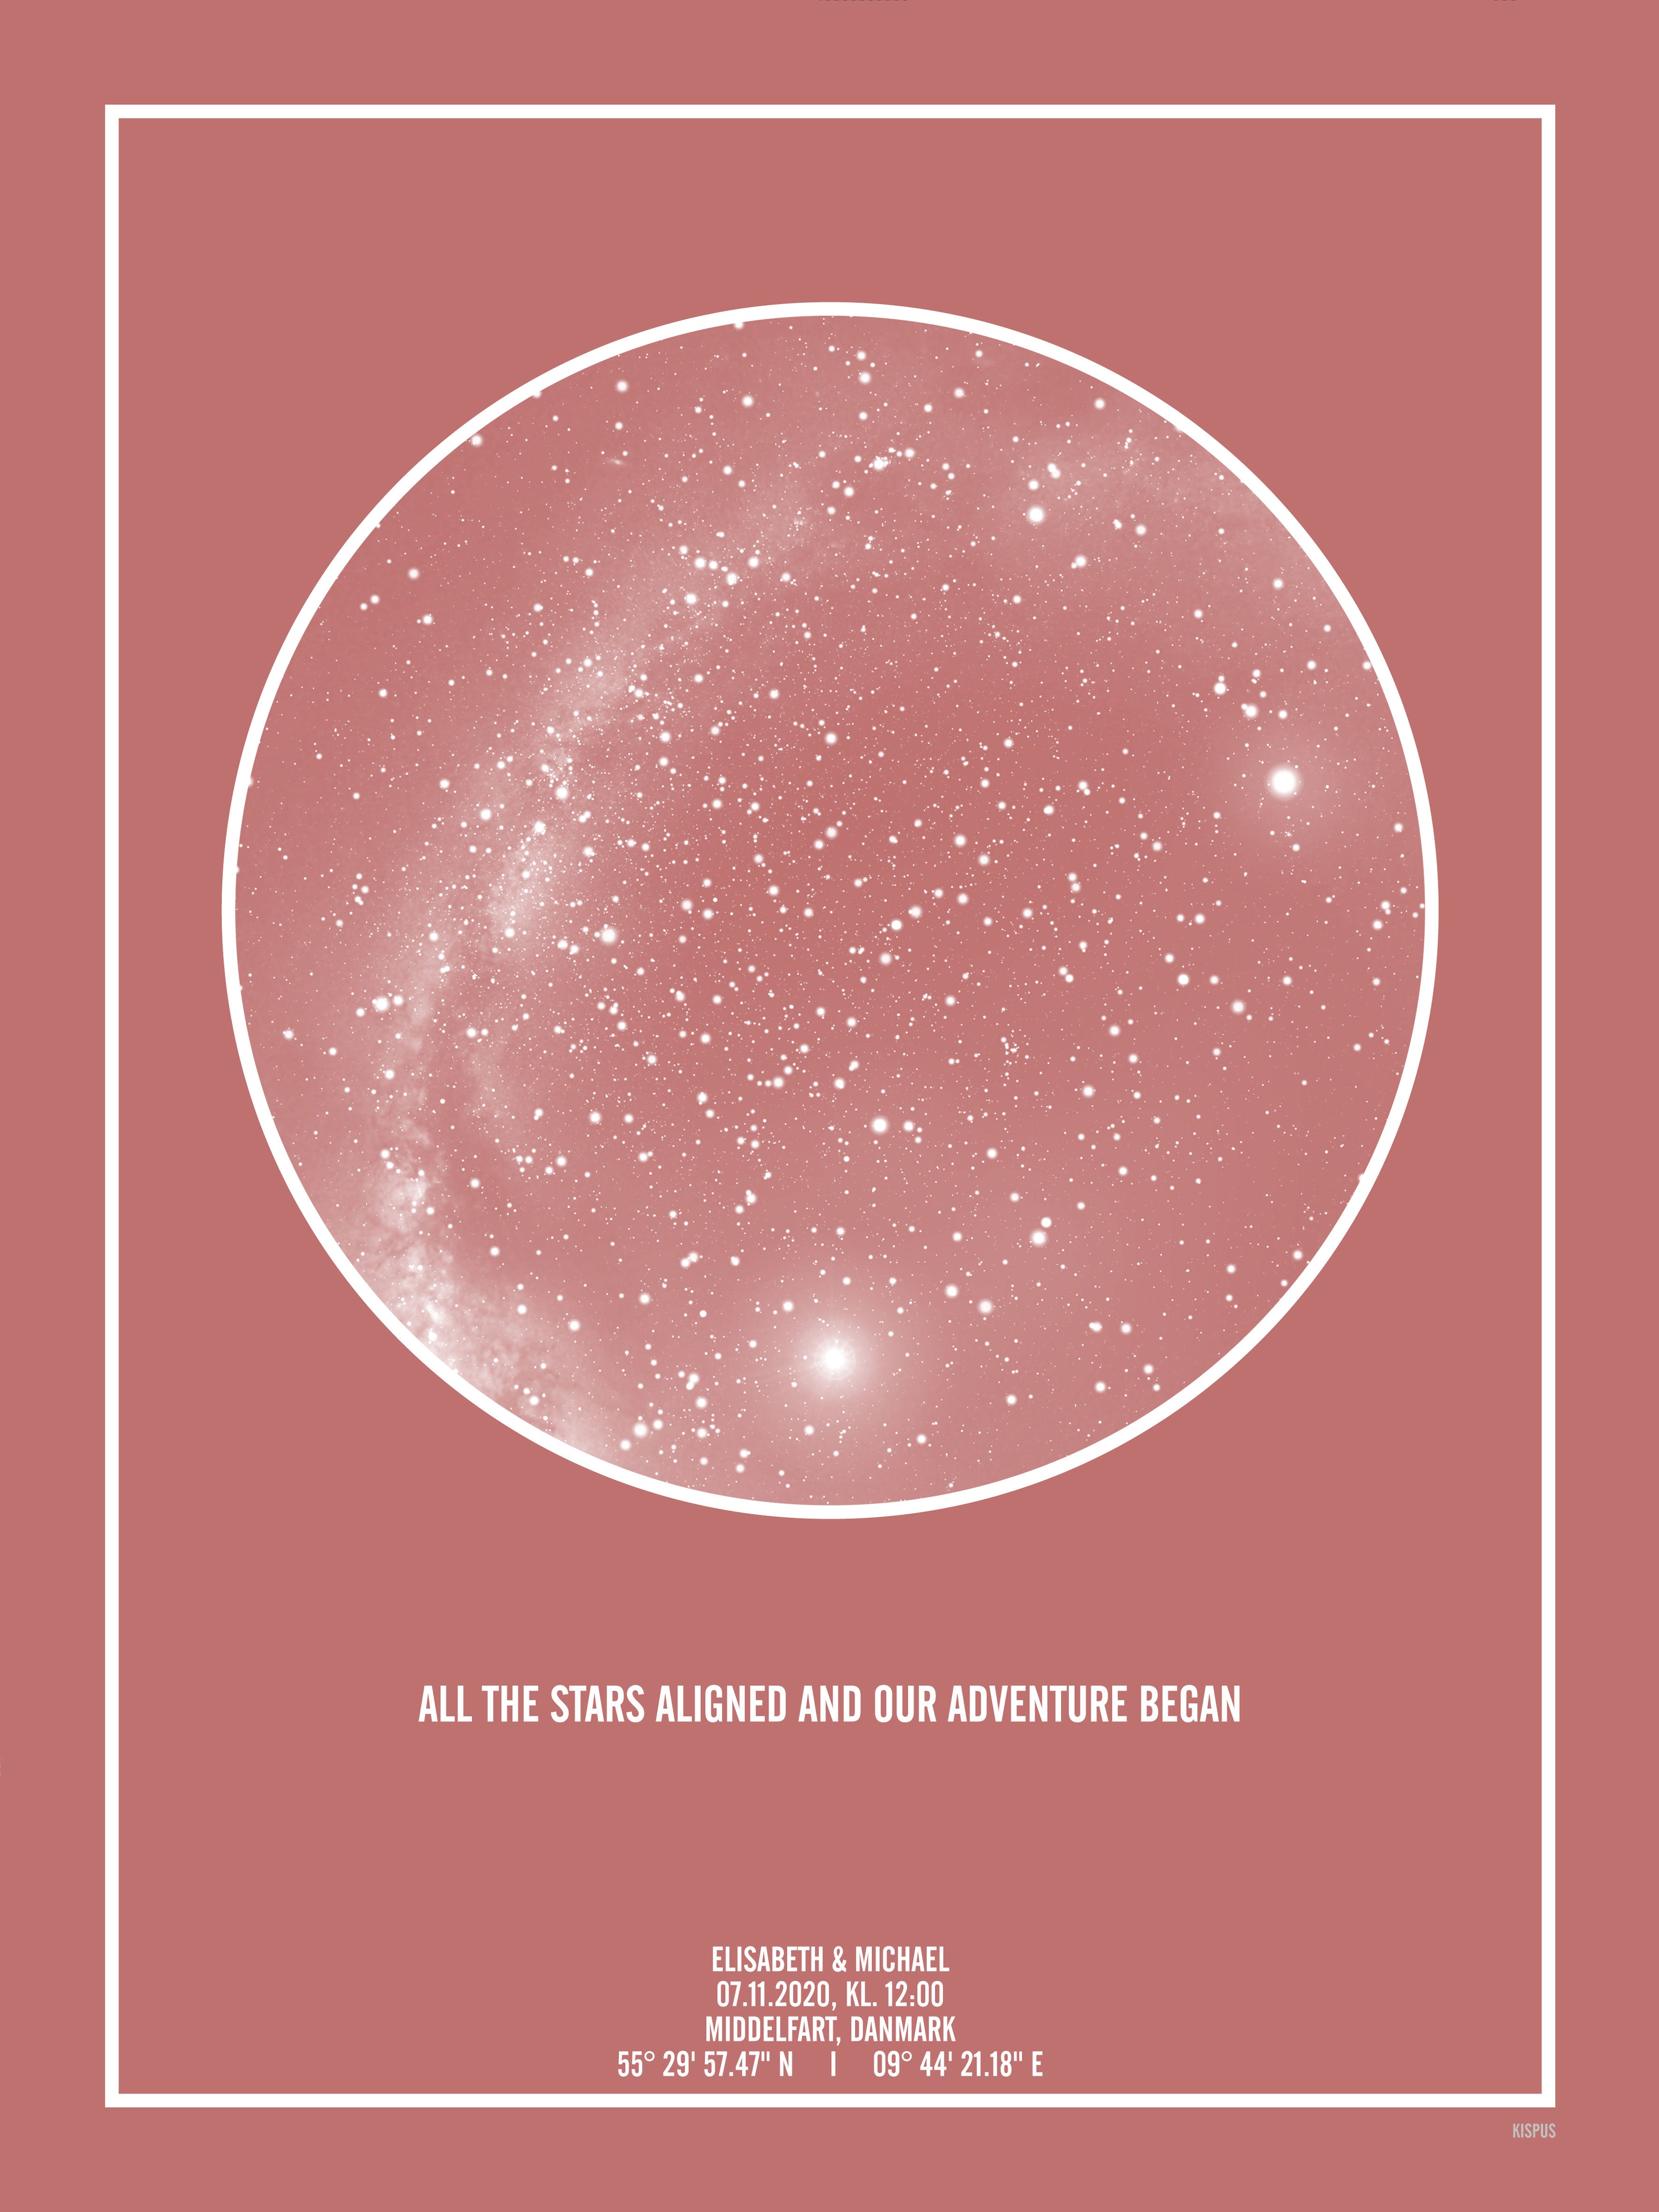 Se PERSONLIG STJERNEHIMMEL PLAKAT (BLUSH) - 50x70 / Hvid tekst + blush-farvet stjernehimmel / Stjernehimmel med mælkevej hos KISPUS